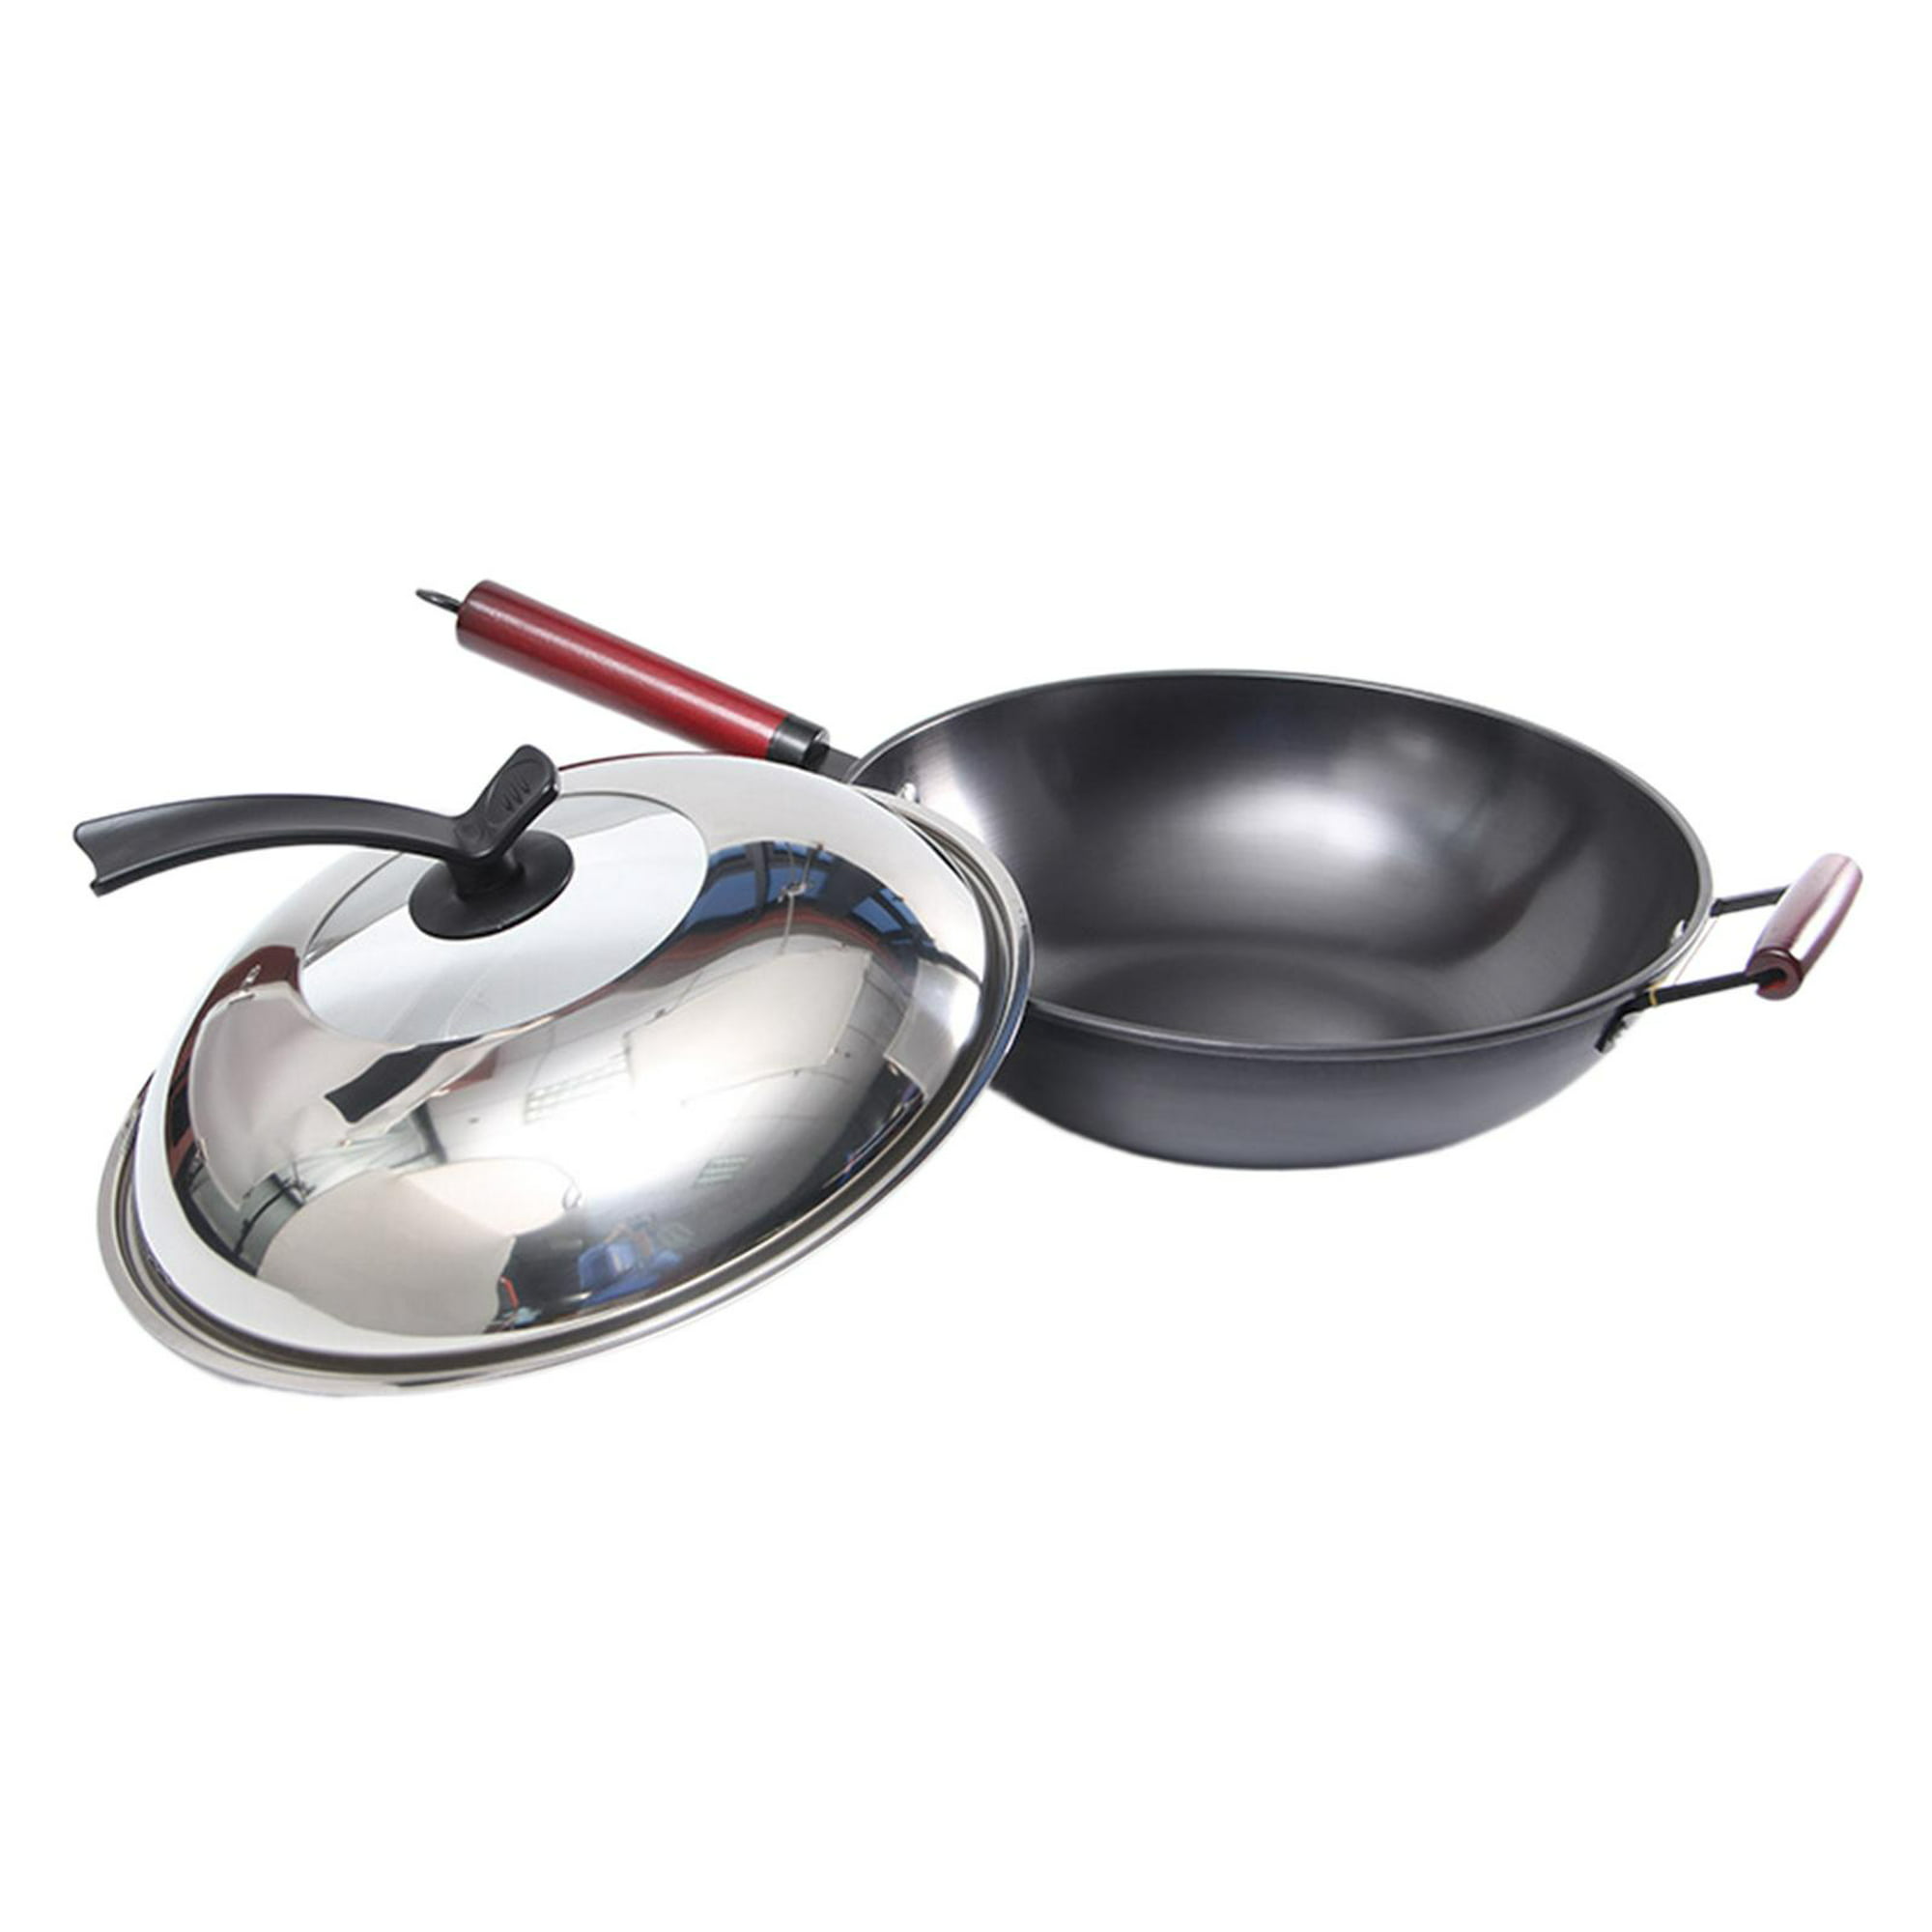 Placa de cocina wok inducción + Sarten wok - Inox - 36 cm - 3077496